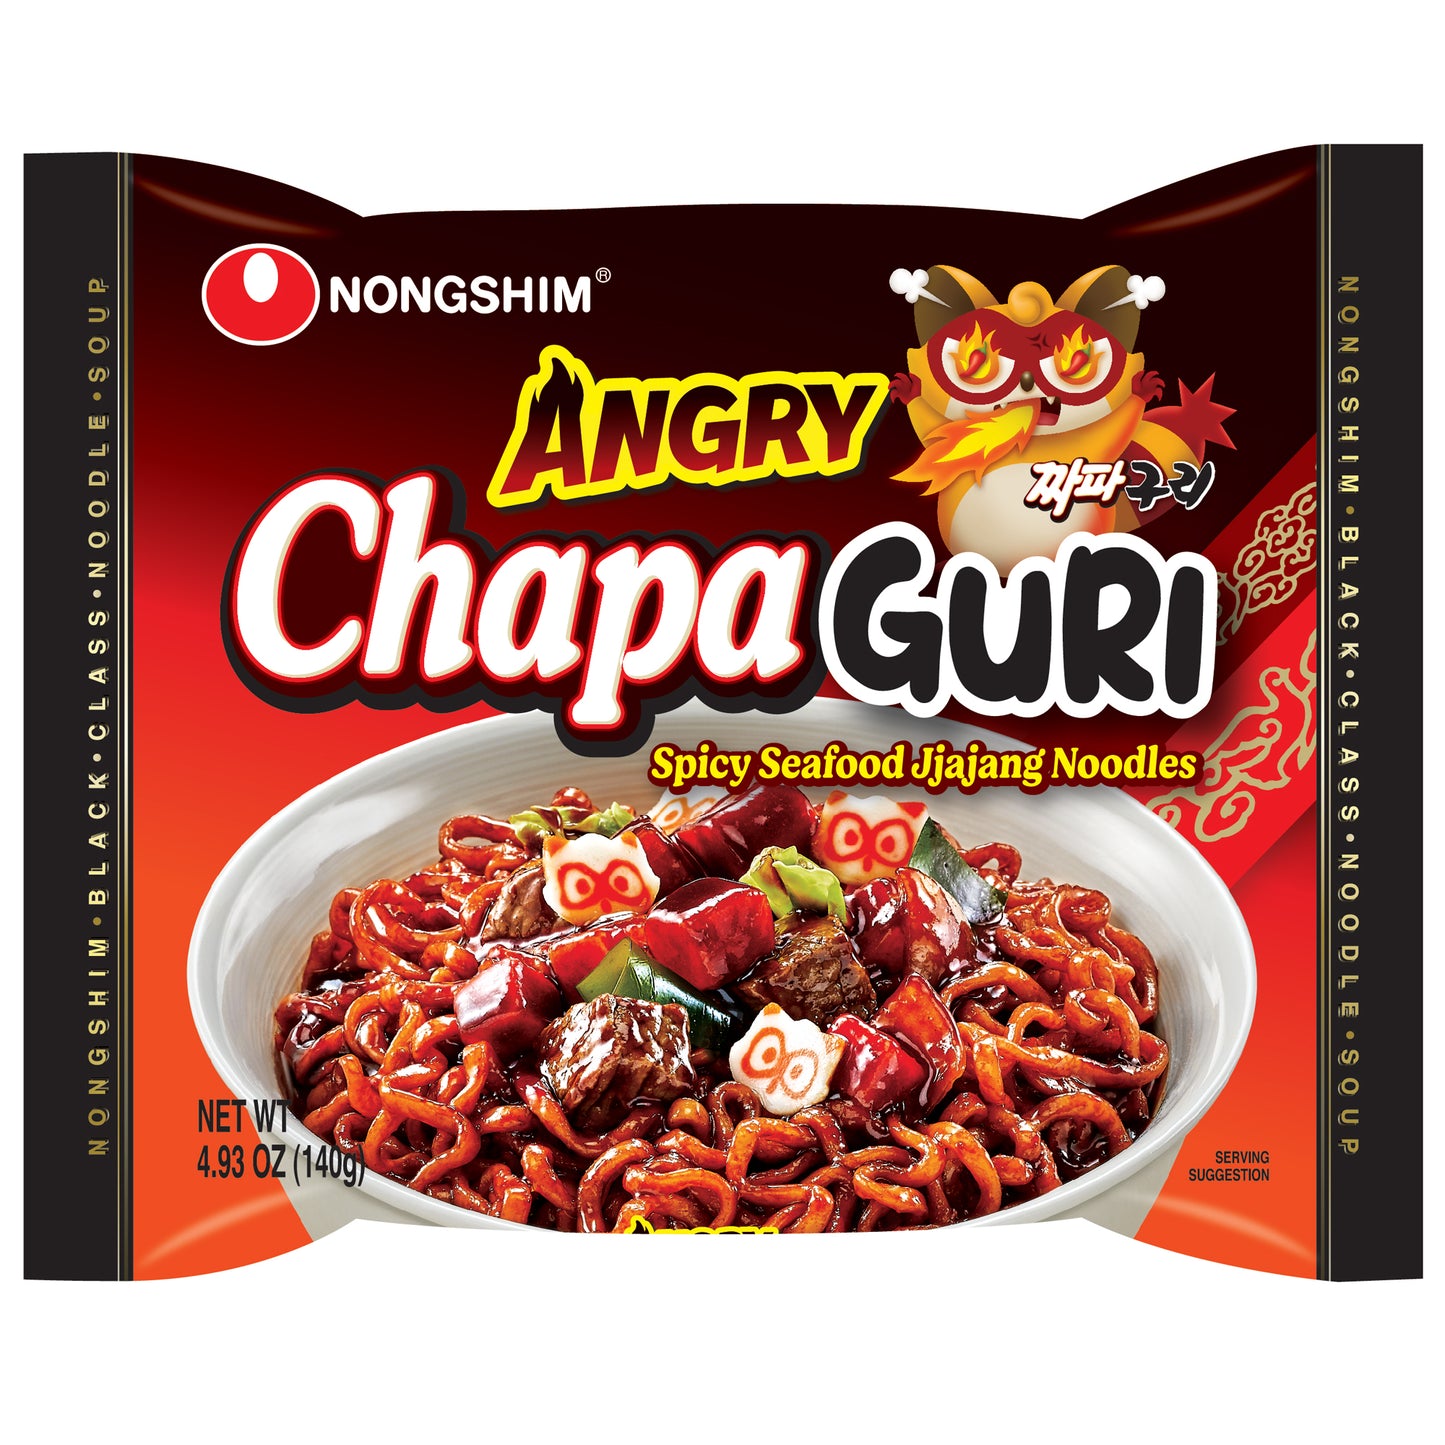 Nongshim Angry Chapaguri